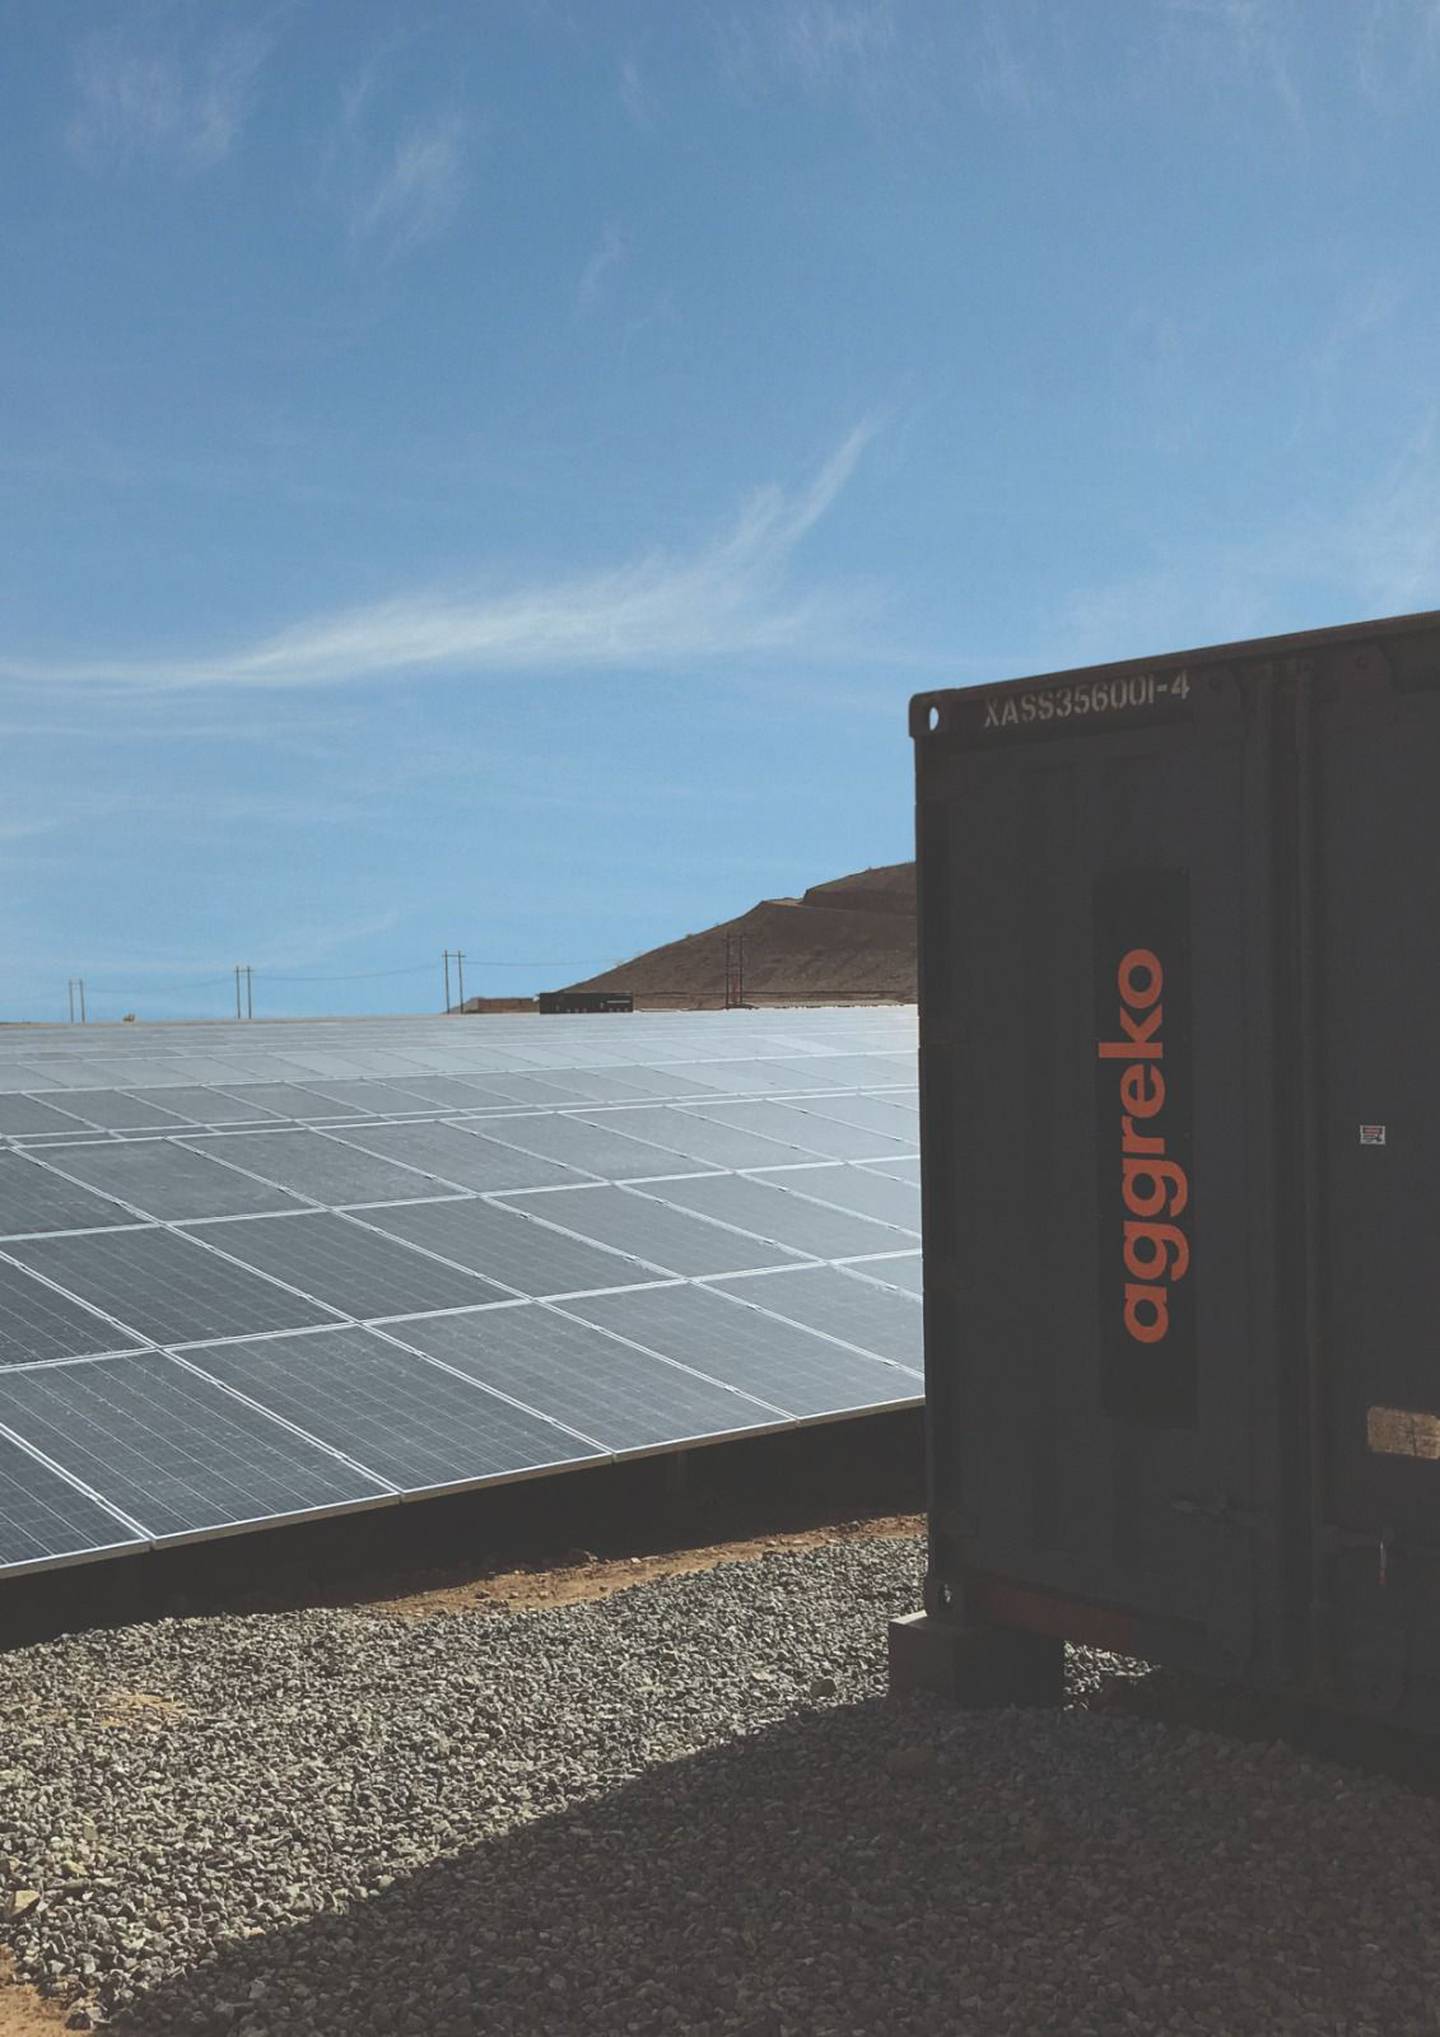 Aggreko ha pasado de ser una pequeña empresa local a una global, pionera en energía, empleando a más de 6.000 personas.